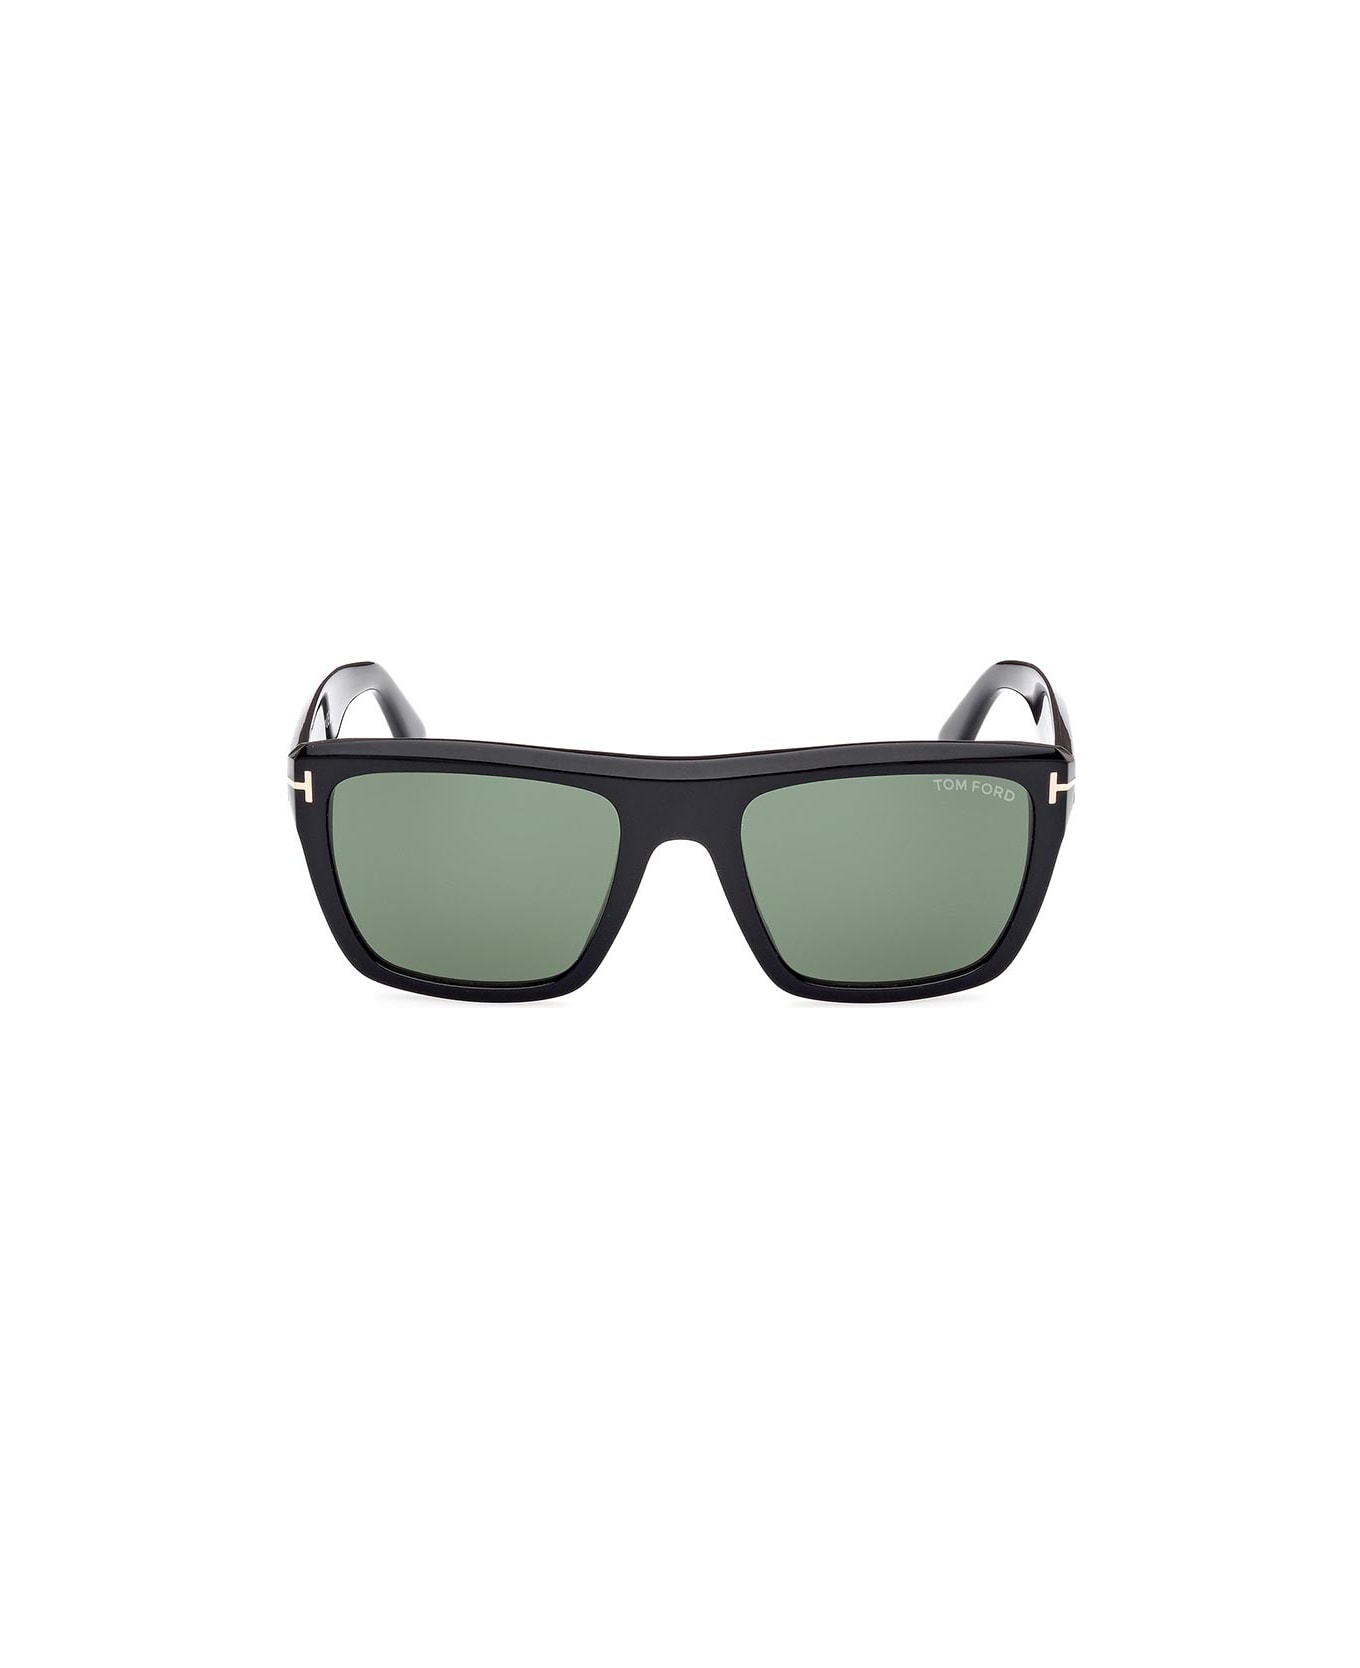 Tom Ford Eyewear Eyewear - Nero/Verde